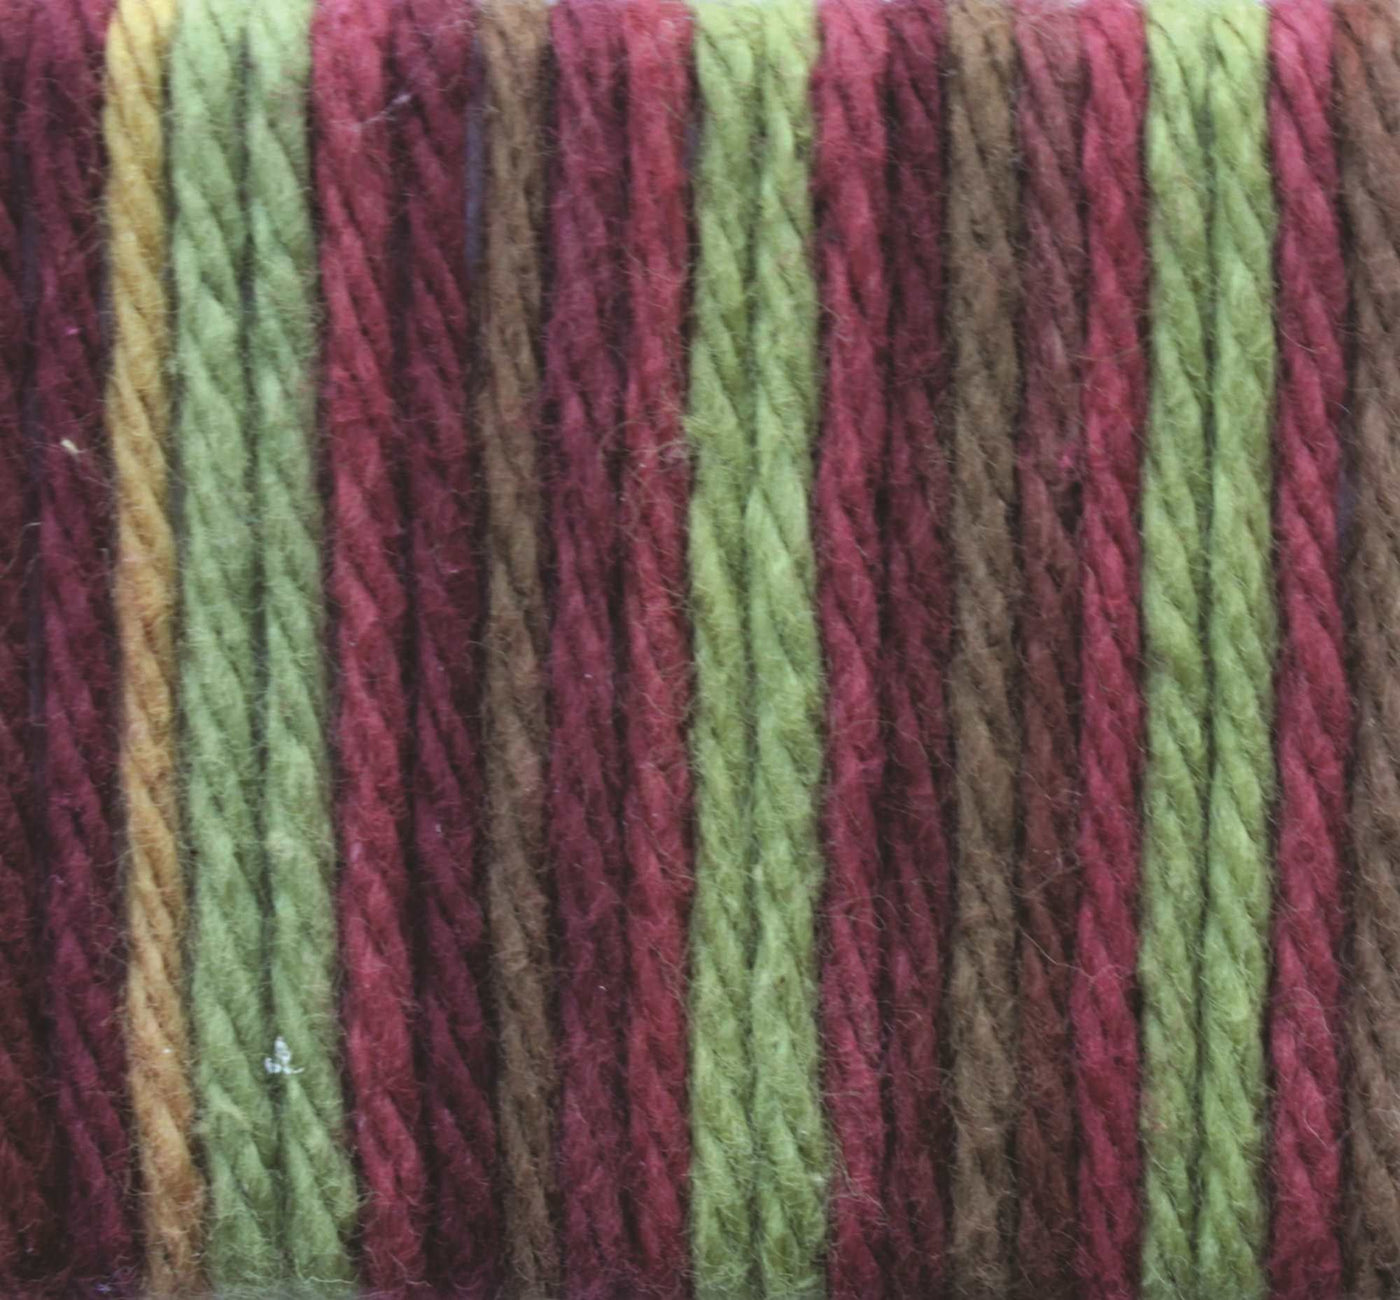 Lily Sugar 'n Cream Knitting Yarn - Cone